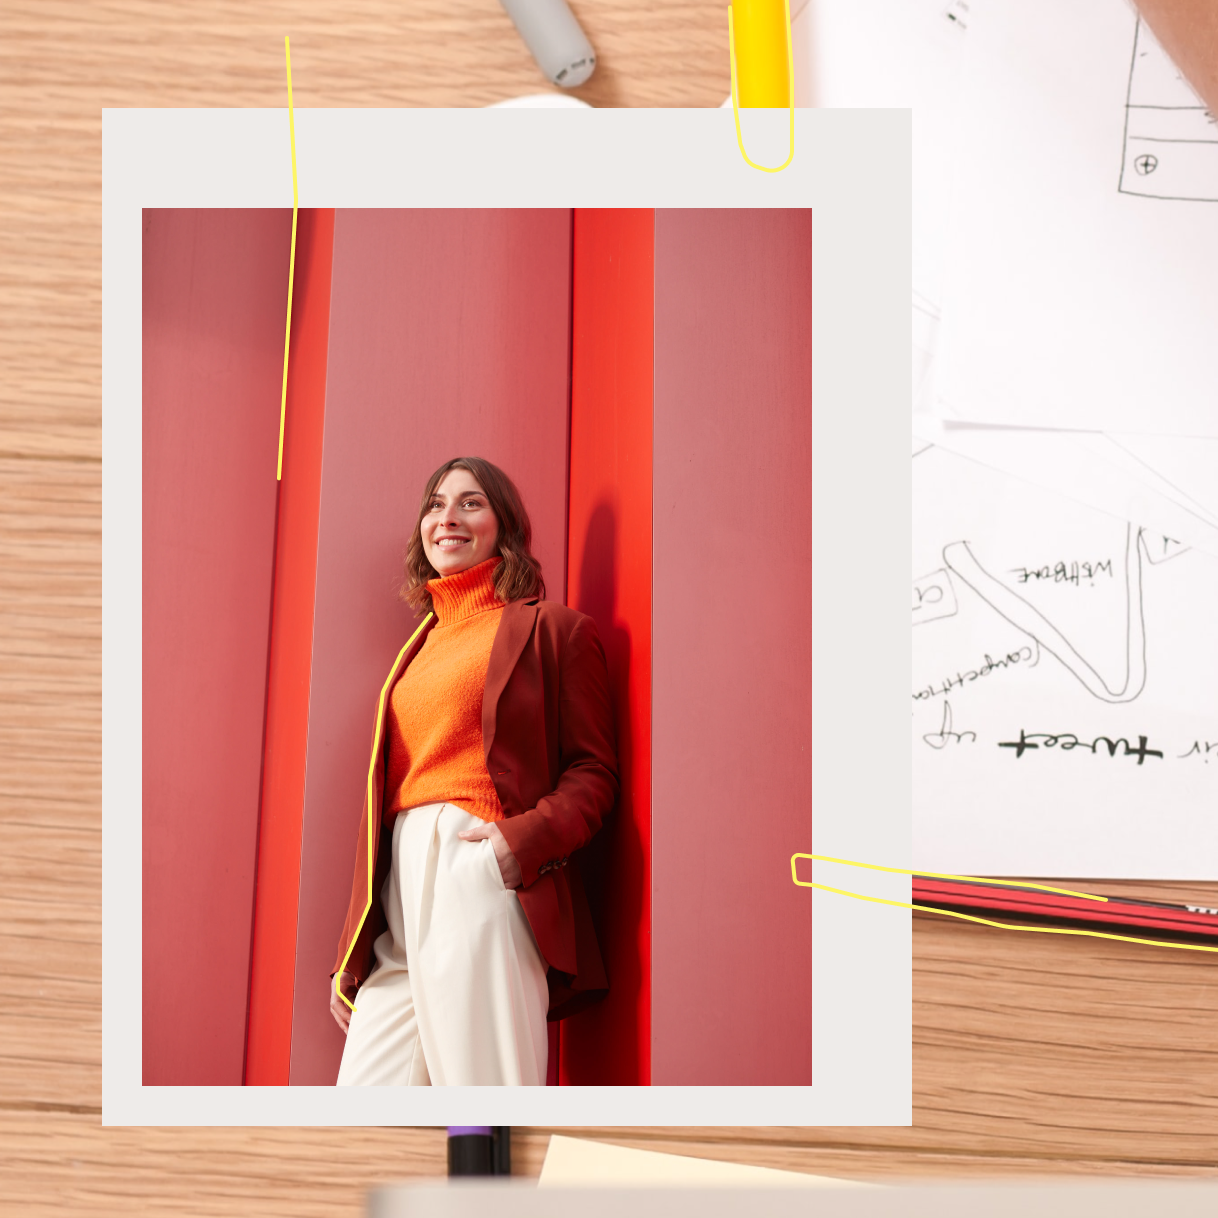 Frau vor roter Wand mit Schreibtisch im Hintergrund